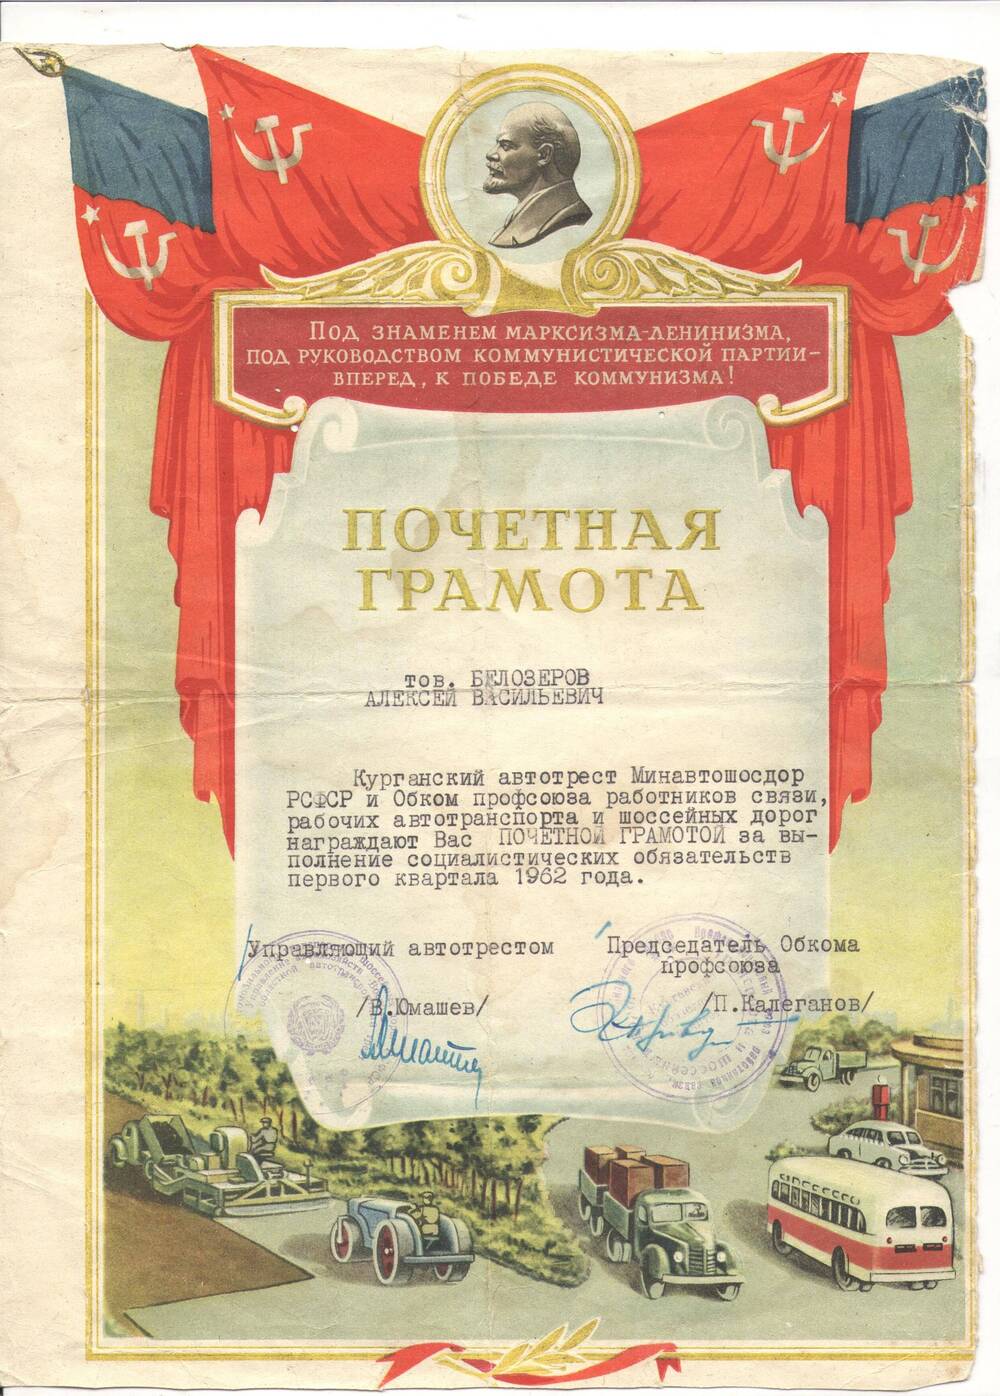 Грамота почетная Белозерова Алексею Васильевичу – за выполнение социалистических обязательств первого квартала 1962 года